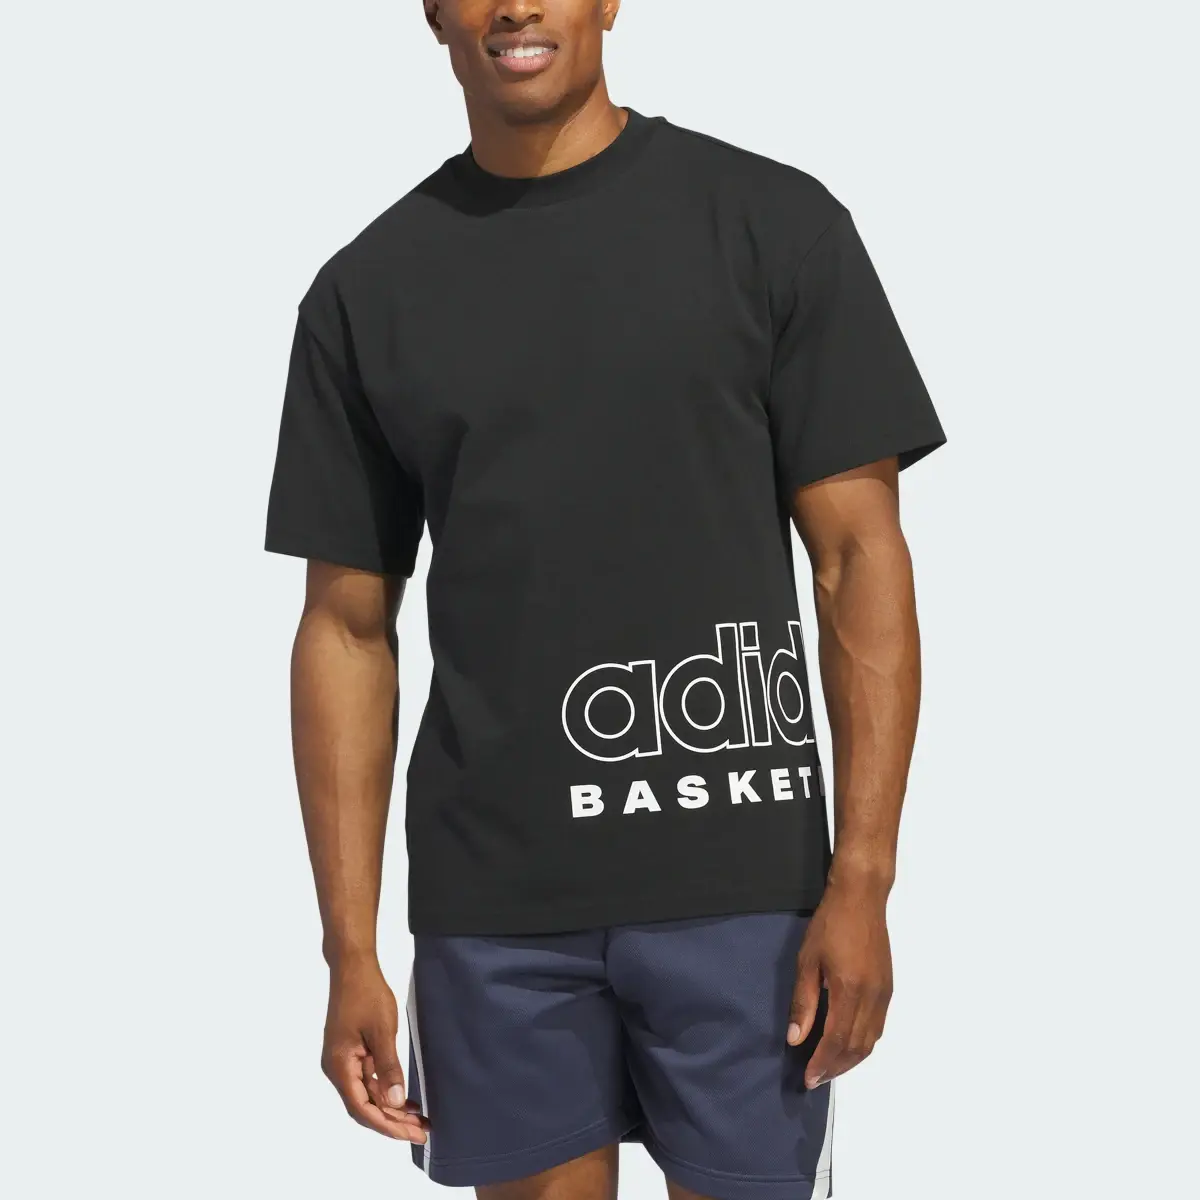 Adidas T-shirt Select adidas Basketball. 1